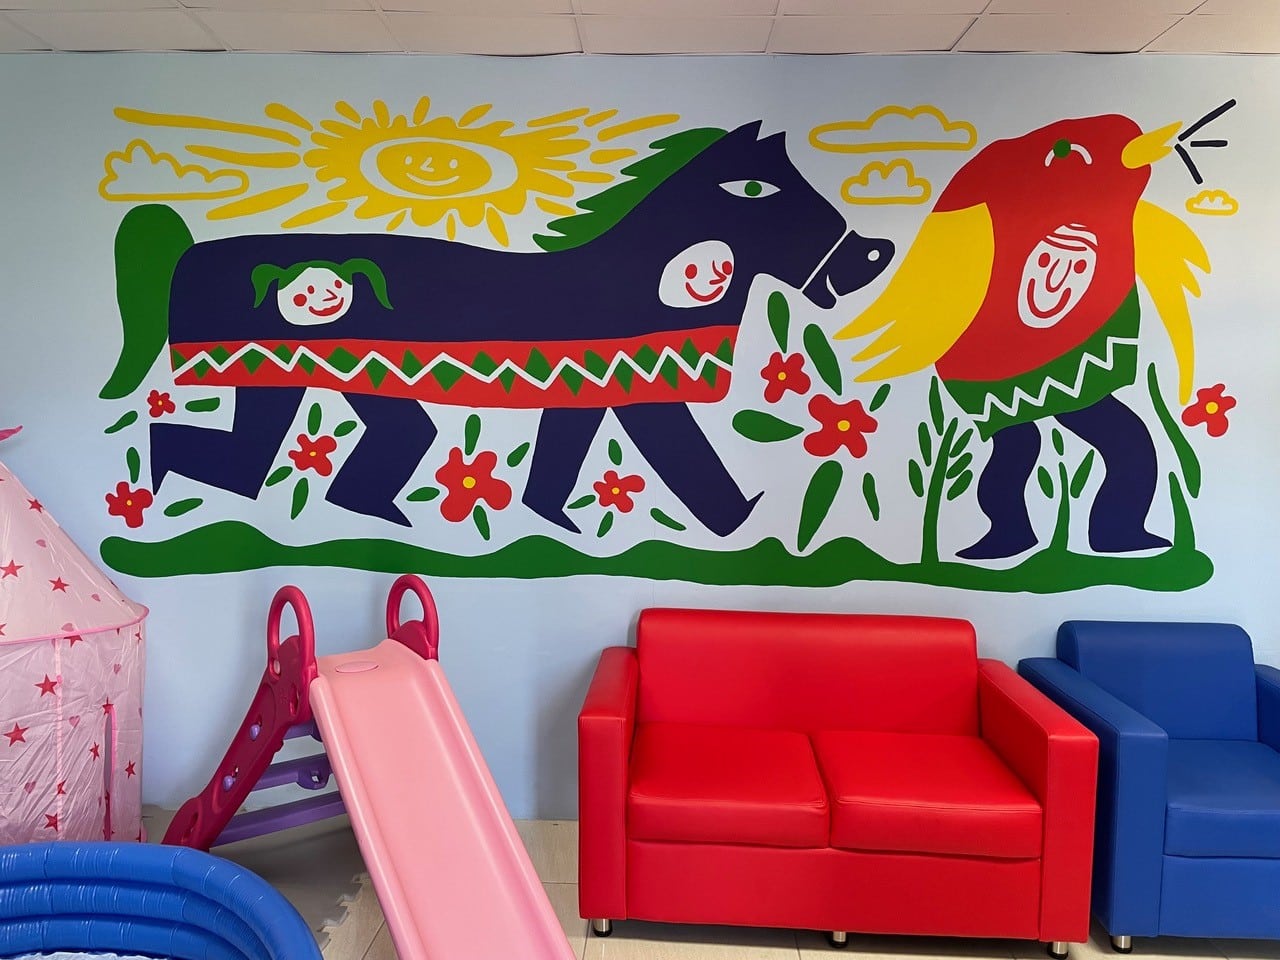 Diseñadores costarricenses fueron galardonados entre 700 propuestas por murales inspirados en niños indígenas